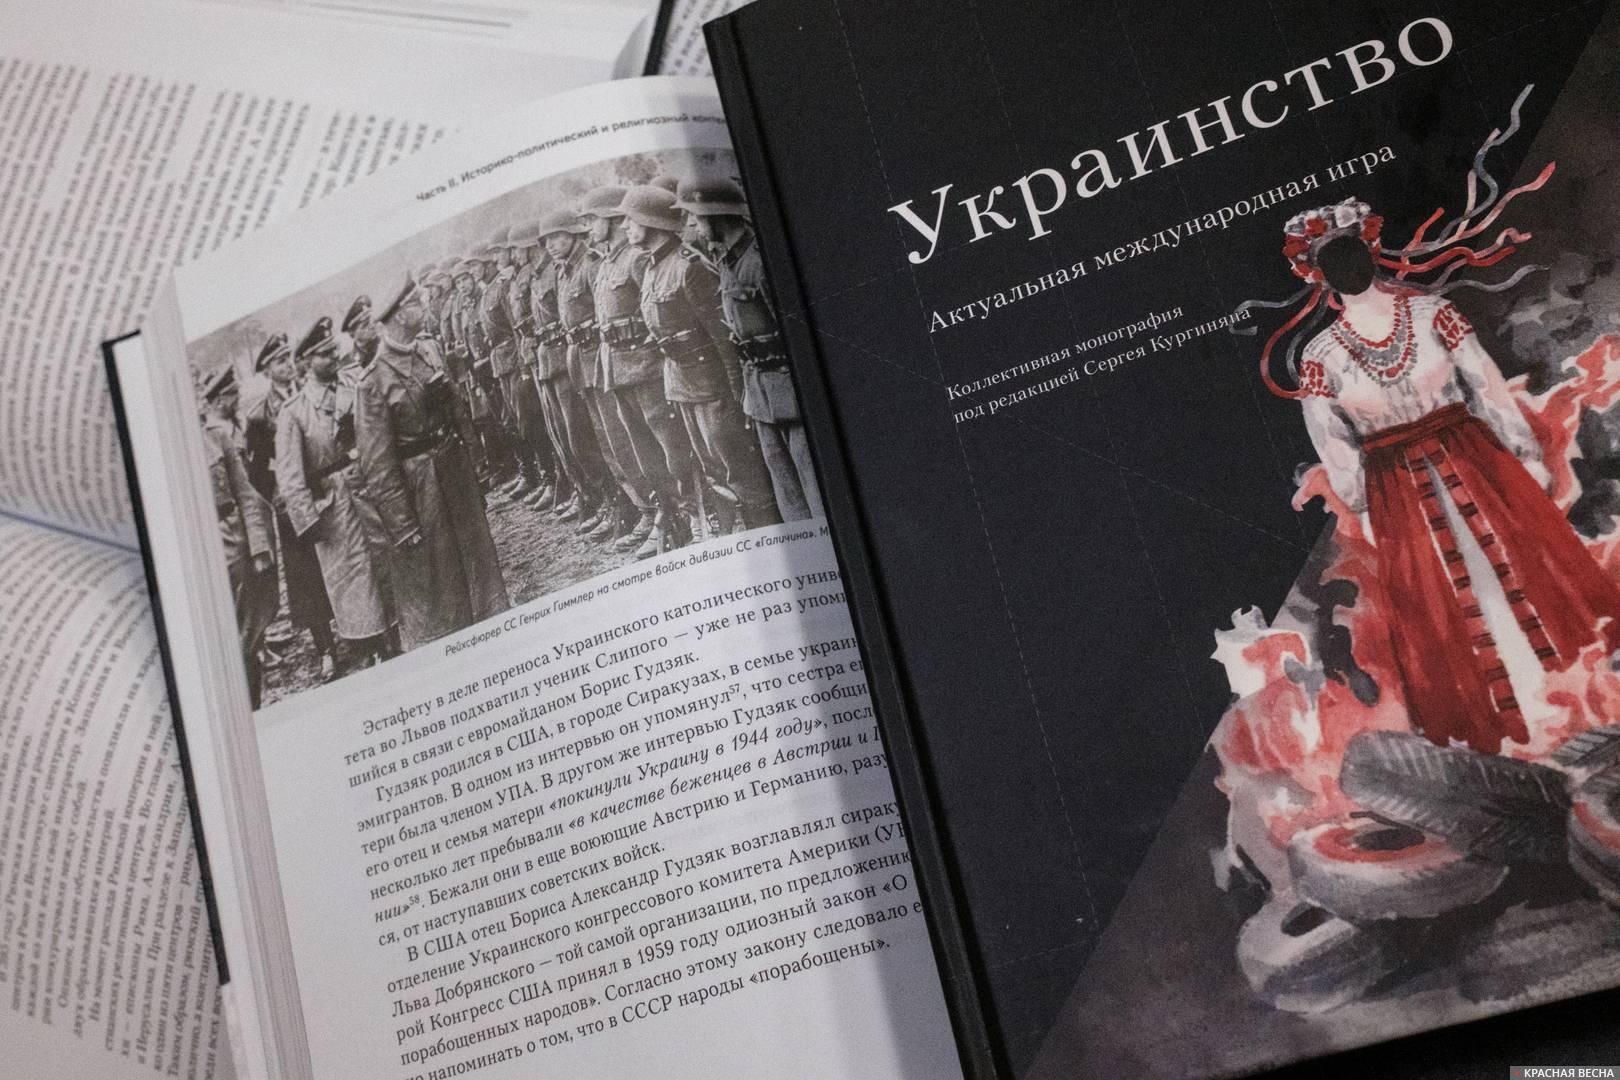 Книга «Украинство»